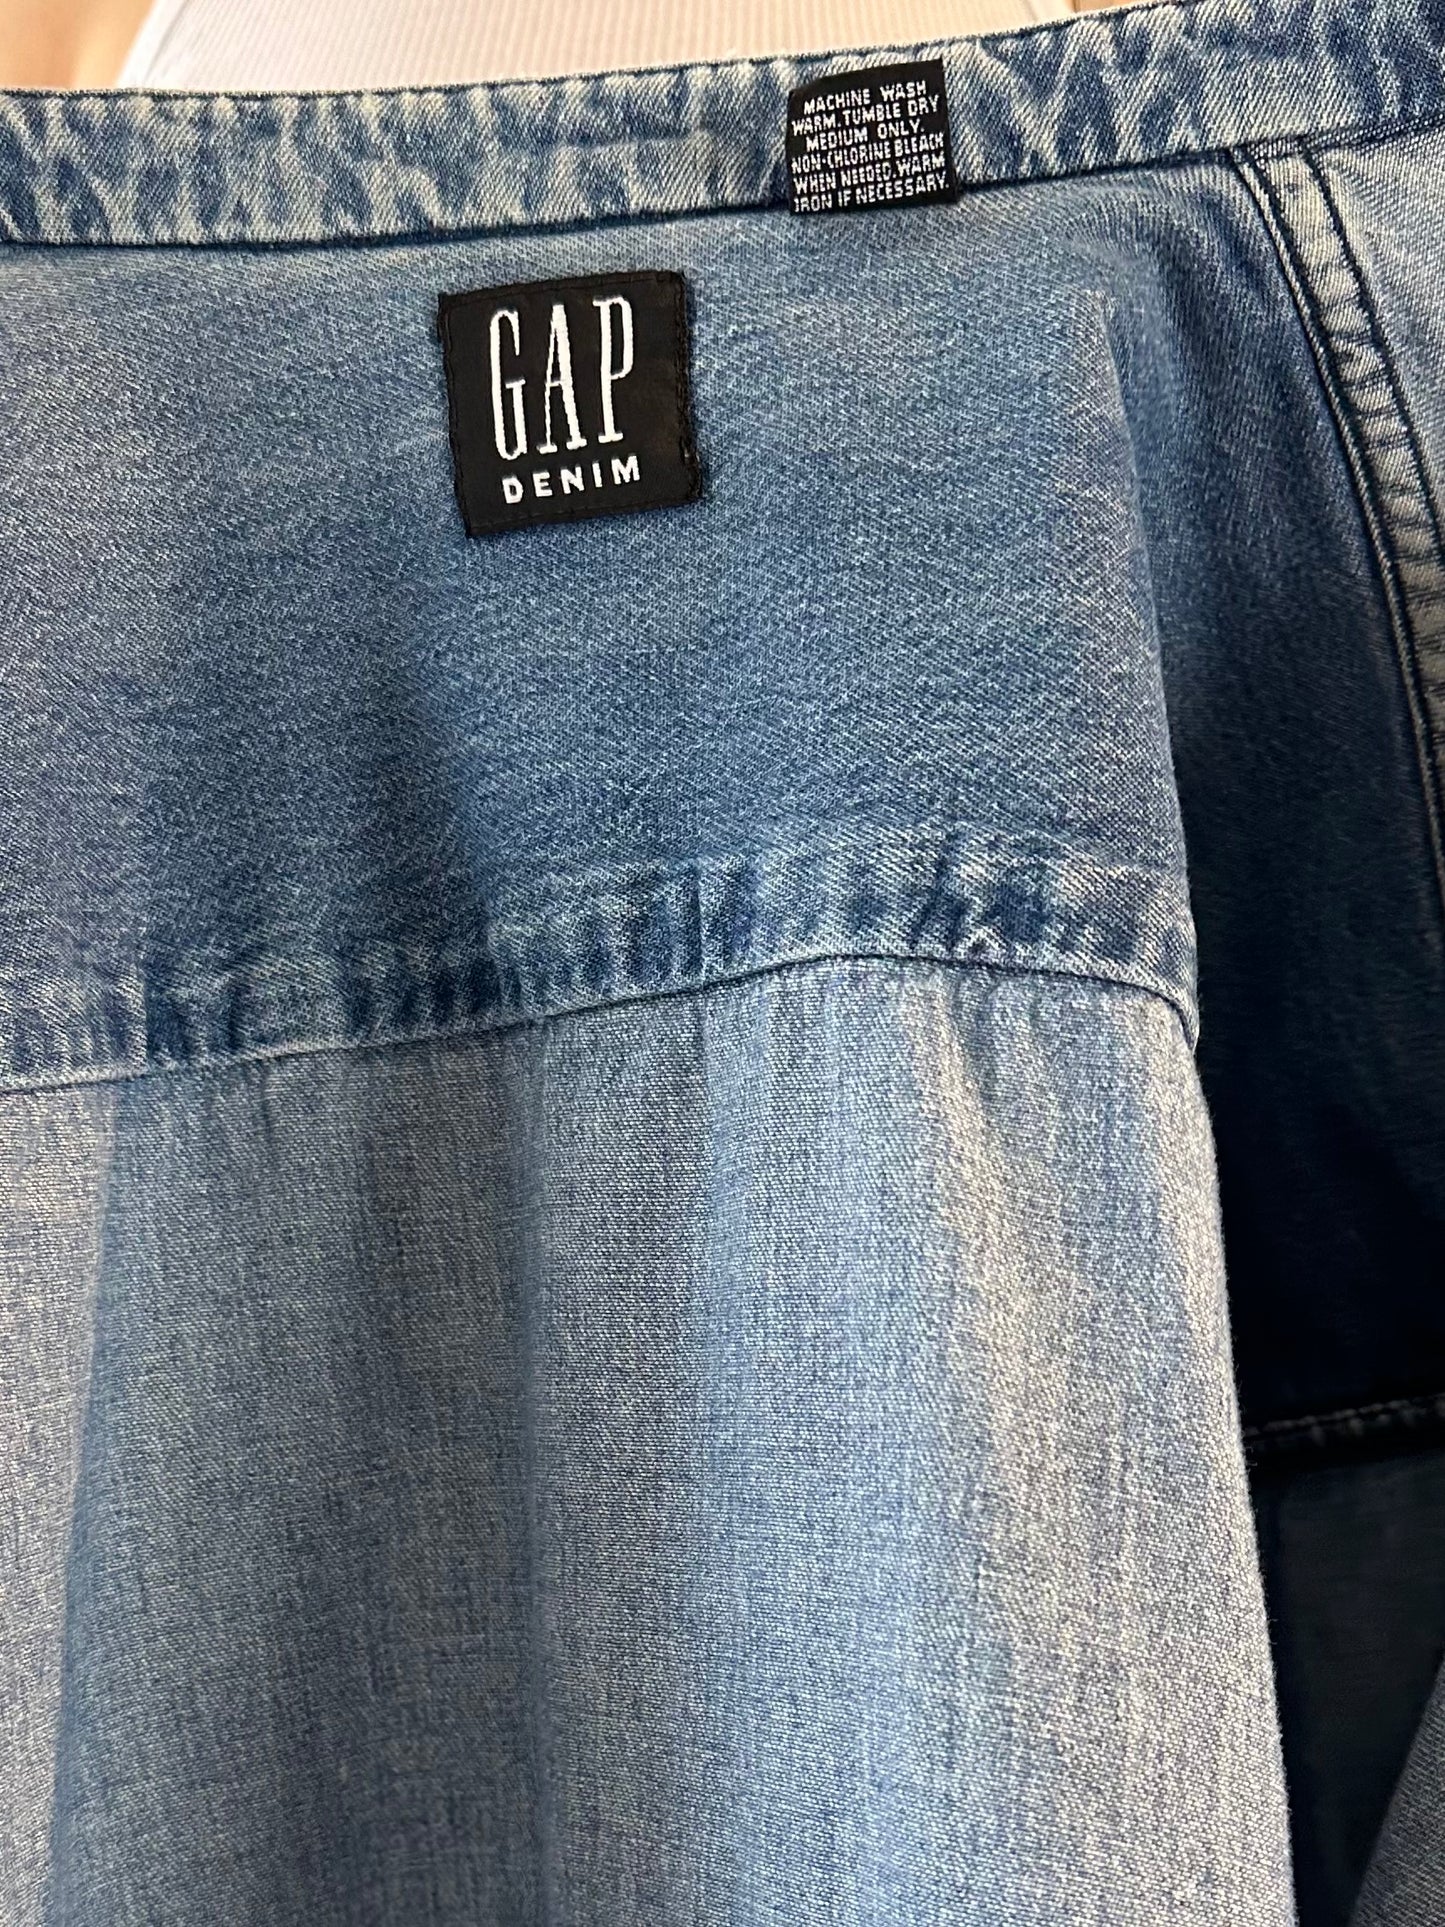 90s 'Gap' Button Up Denim Shirt / Medium